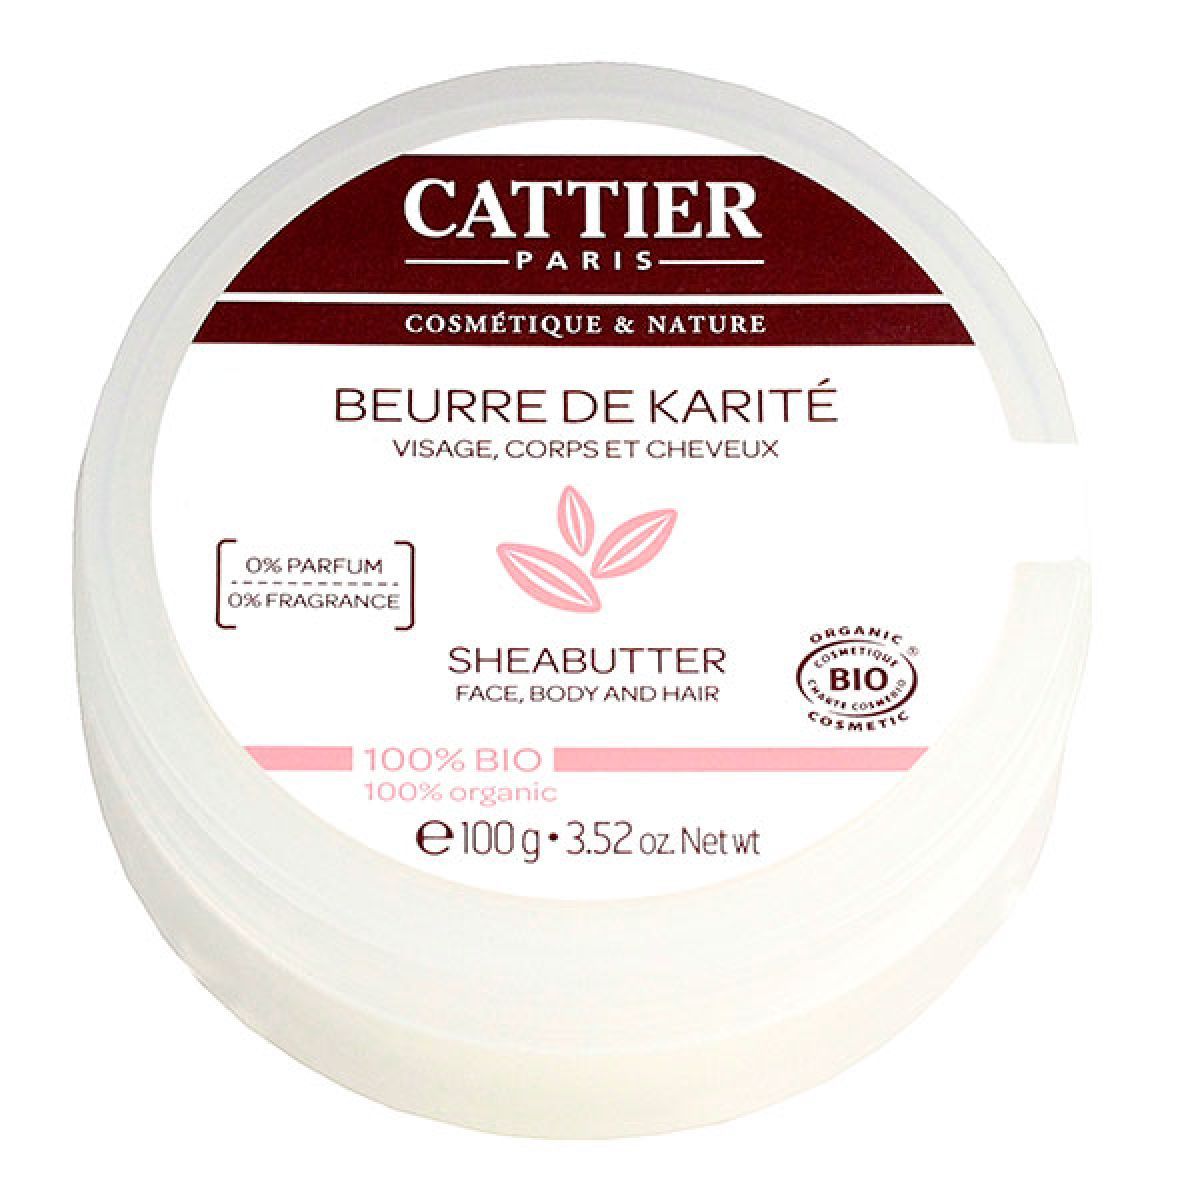 Cattier Beurre de Karité 100% Bio, pot de 100g - La Pharmacie de Pierre